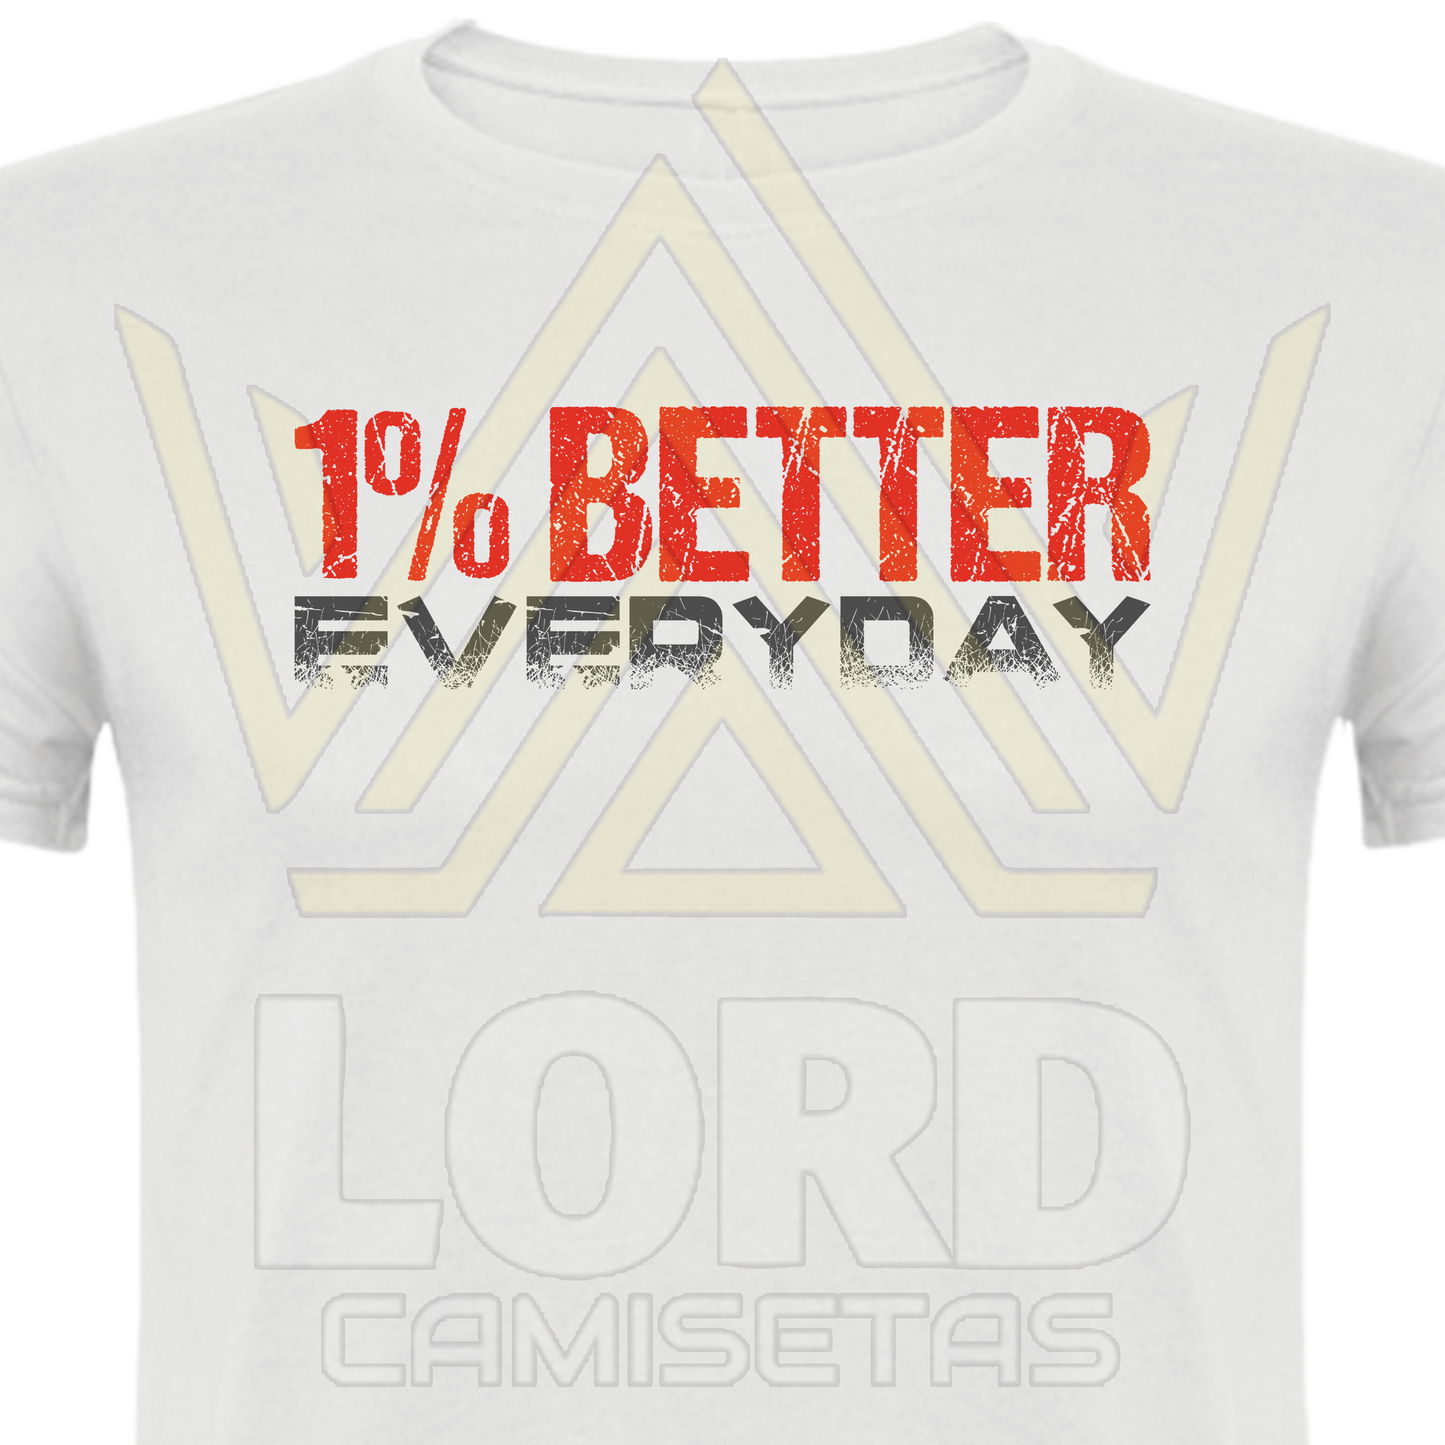 Camiseta 1% Better Everyday